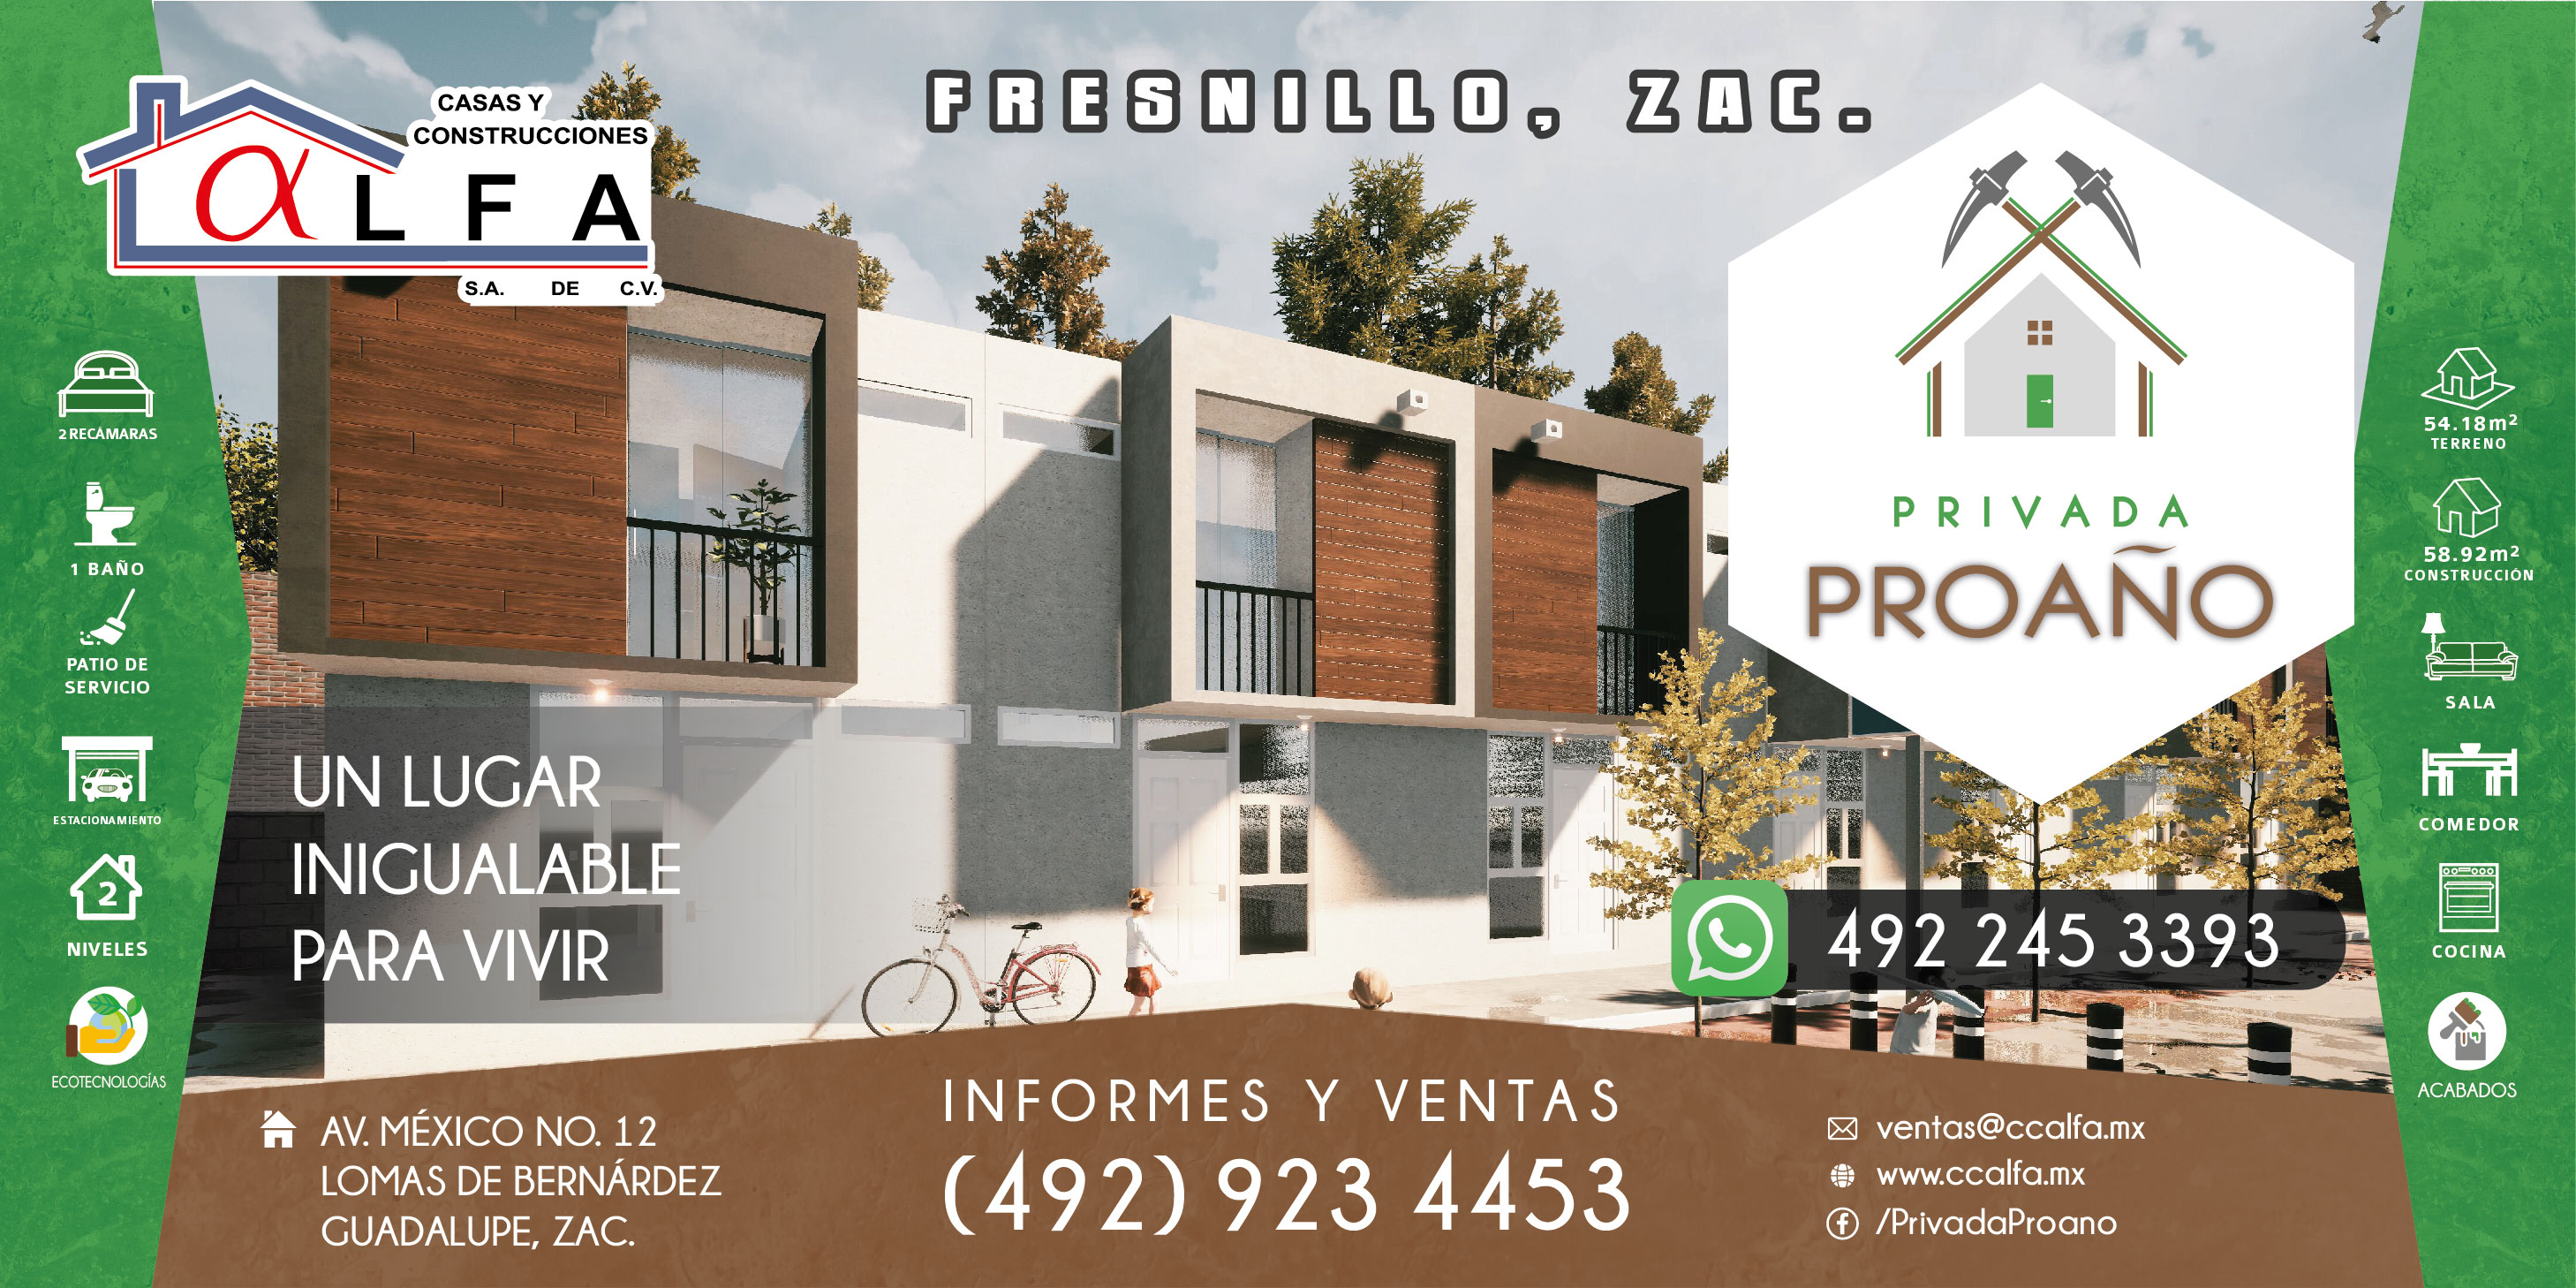 Privada Proañom en Frensillo, Zacatecas - Casas y Construcciones Alfa S.A. de C.V.